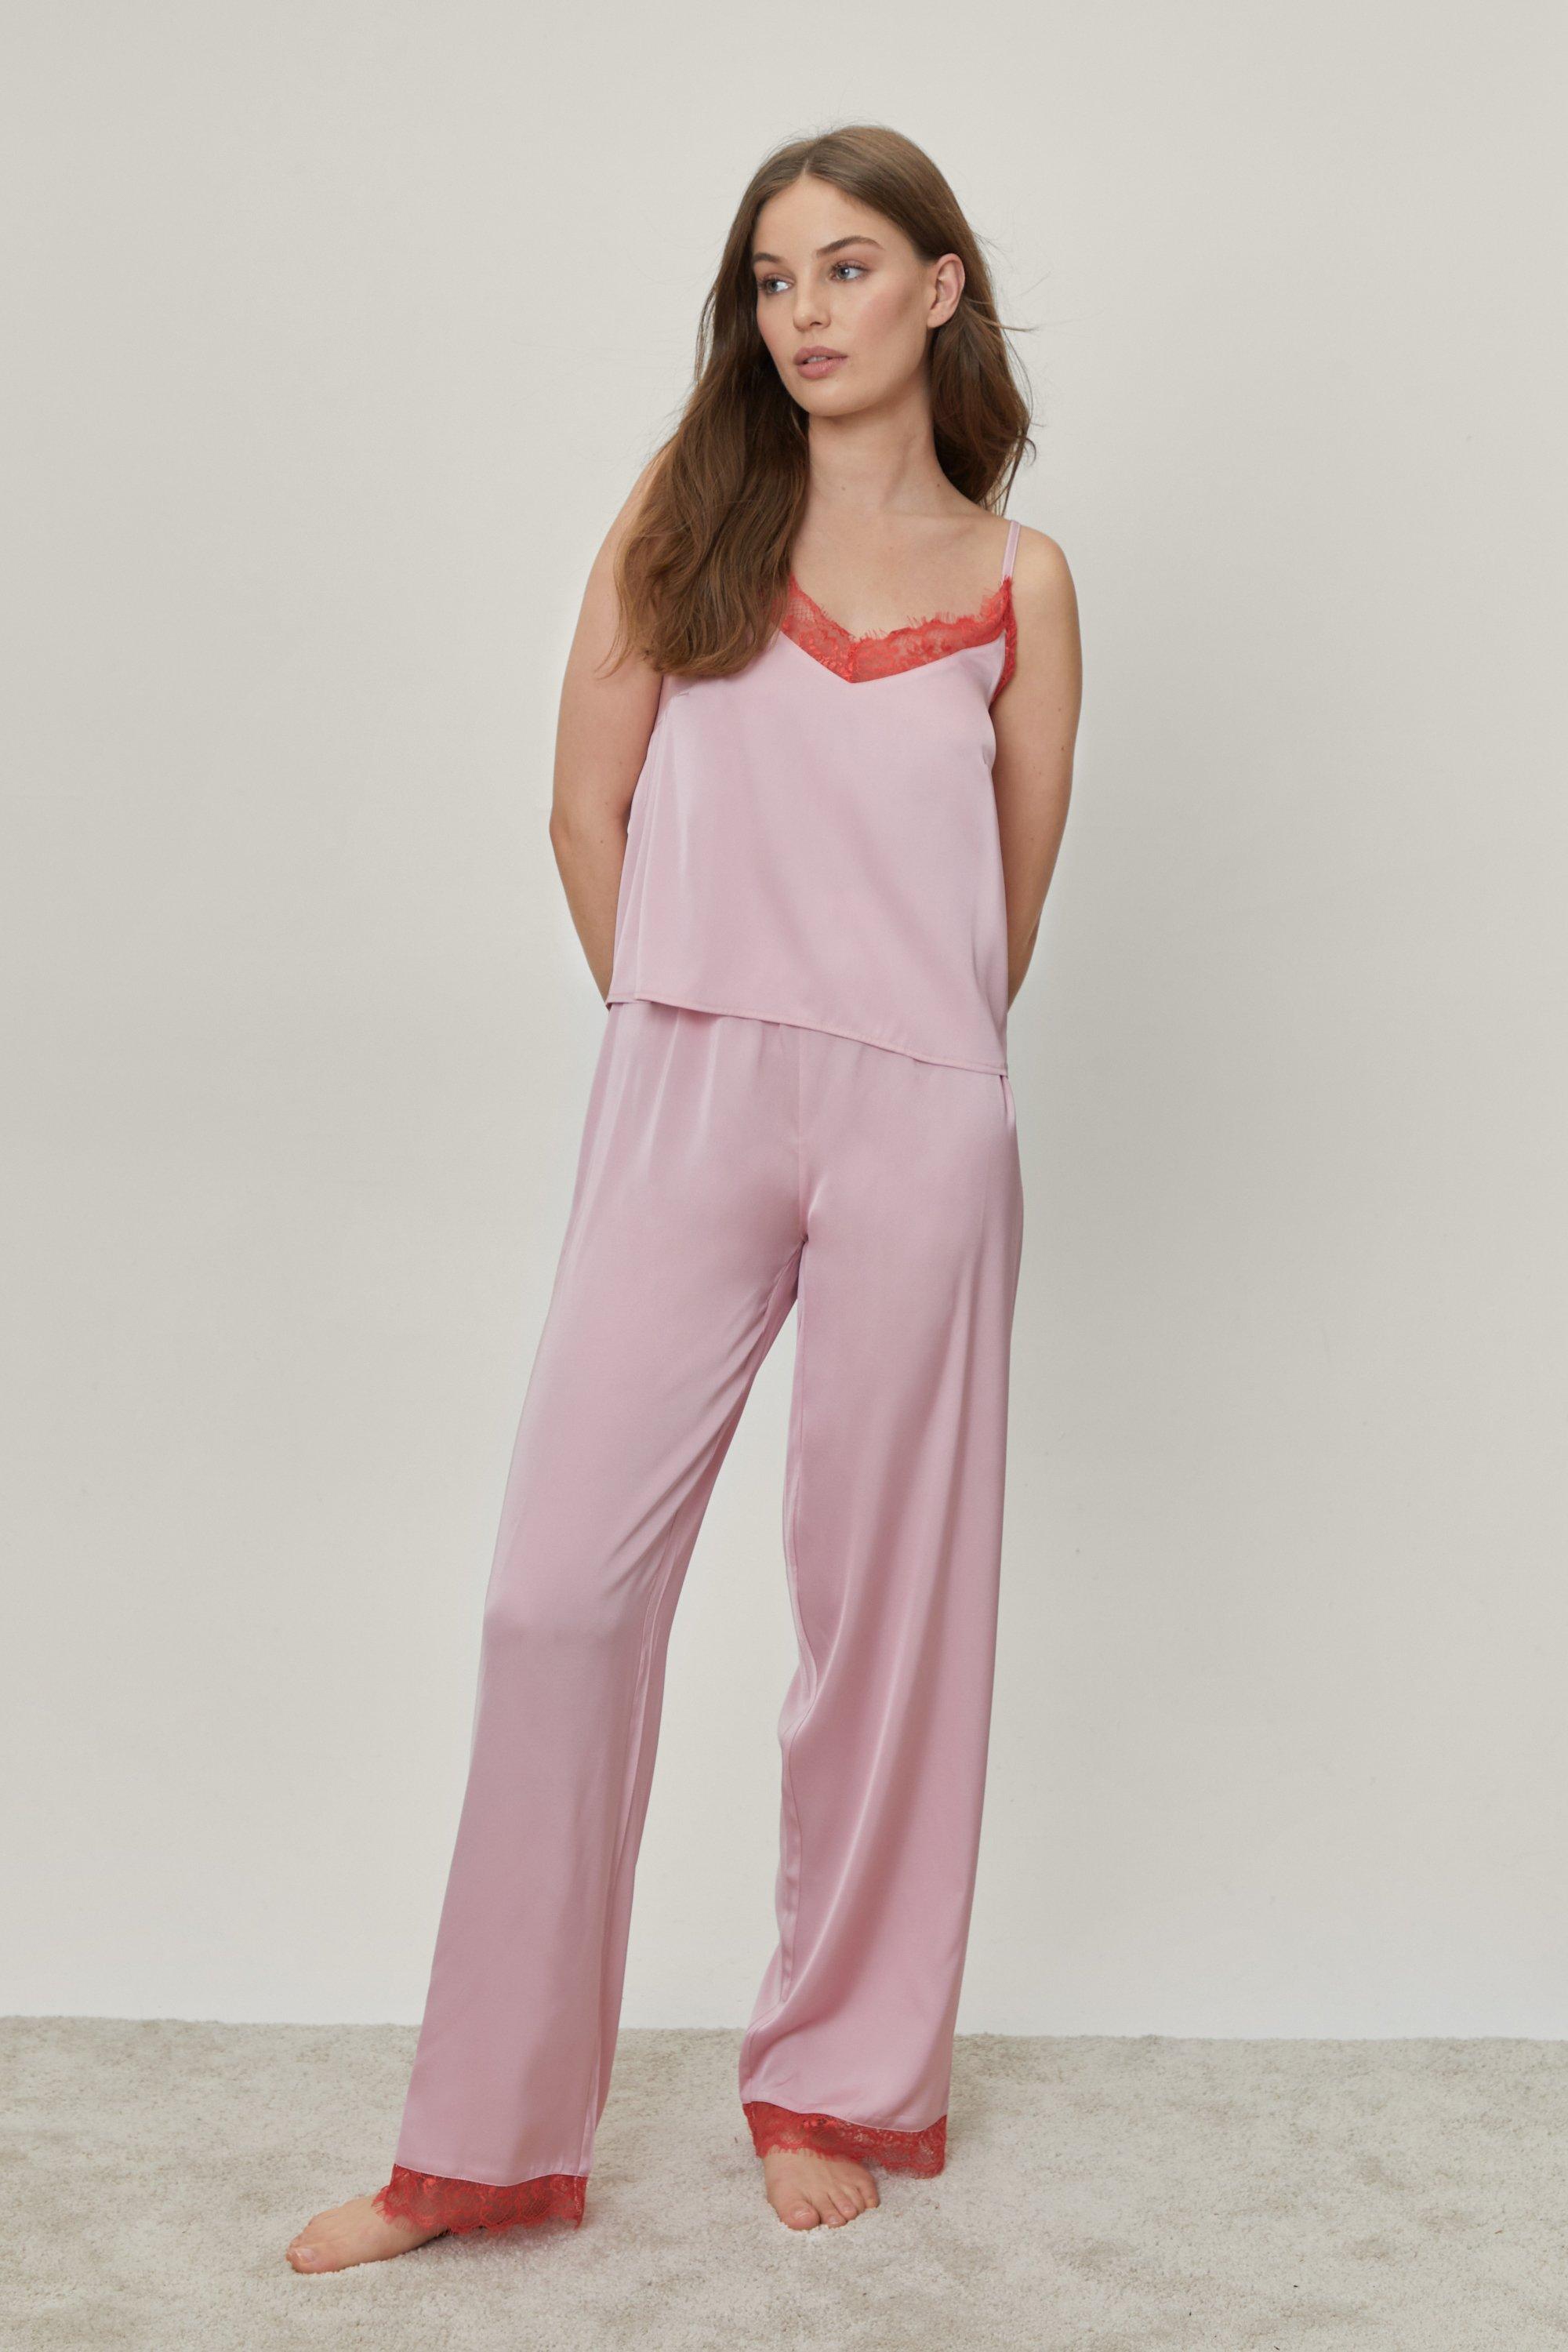 Contrast Lace Satin Cami and Pants Pajama Set